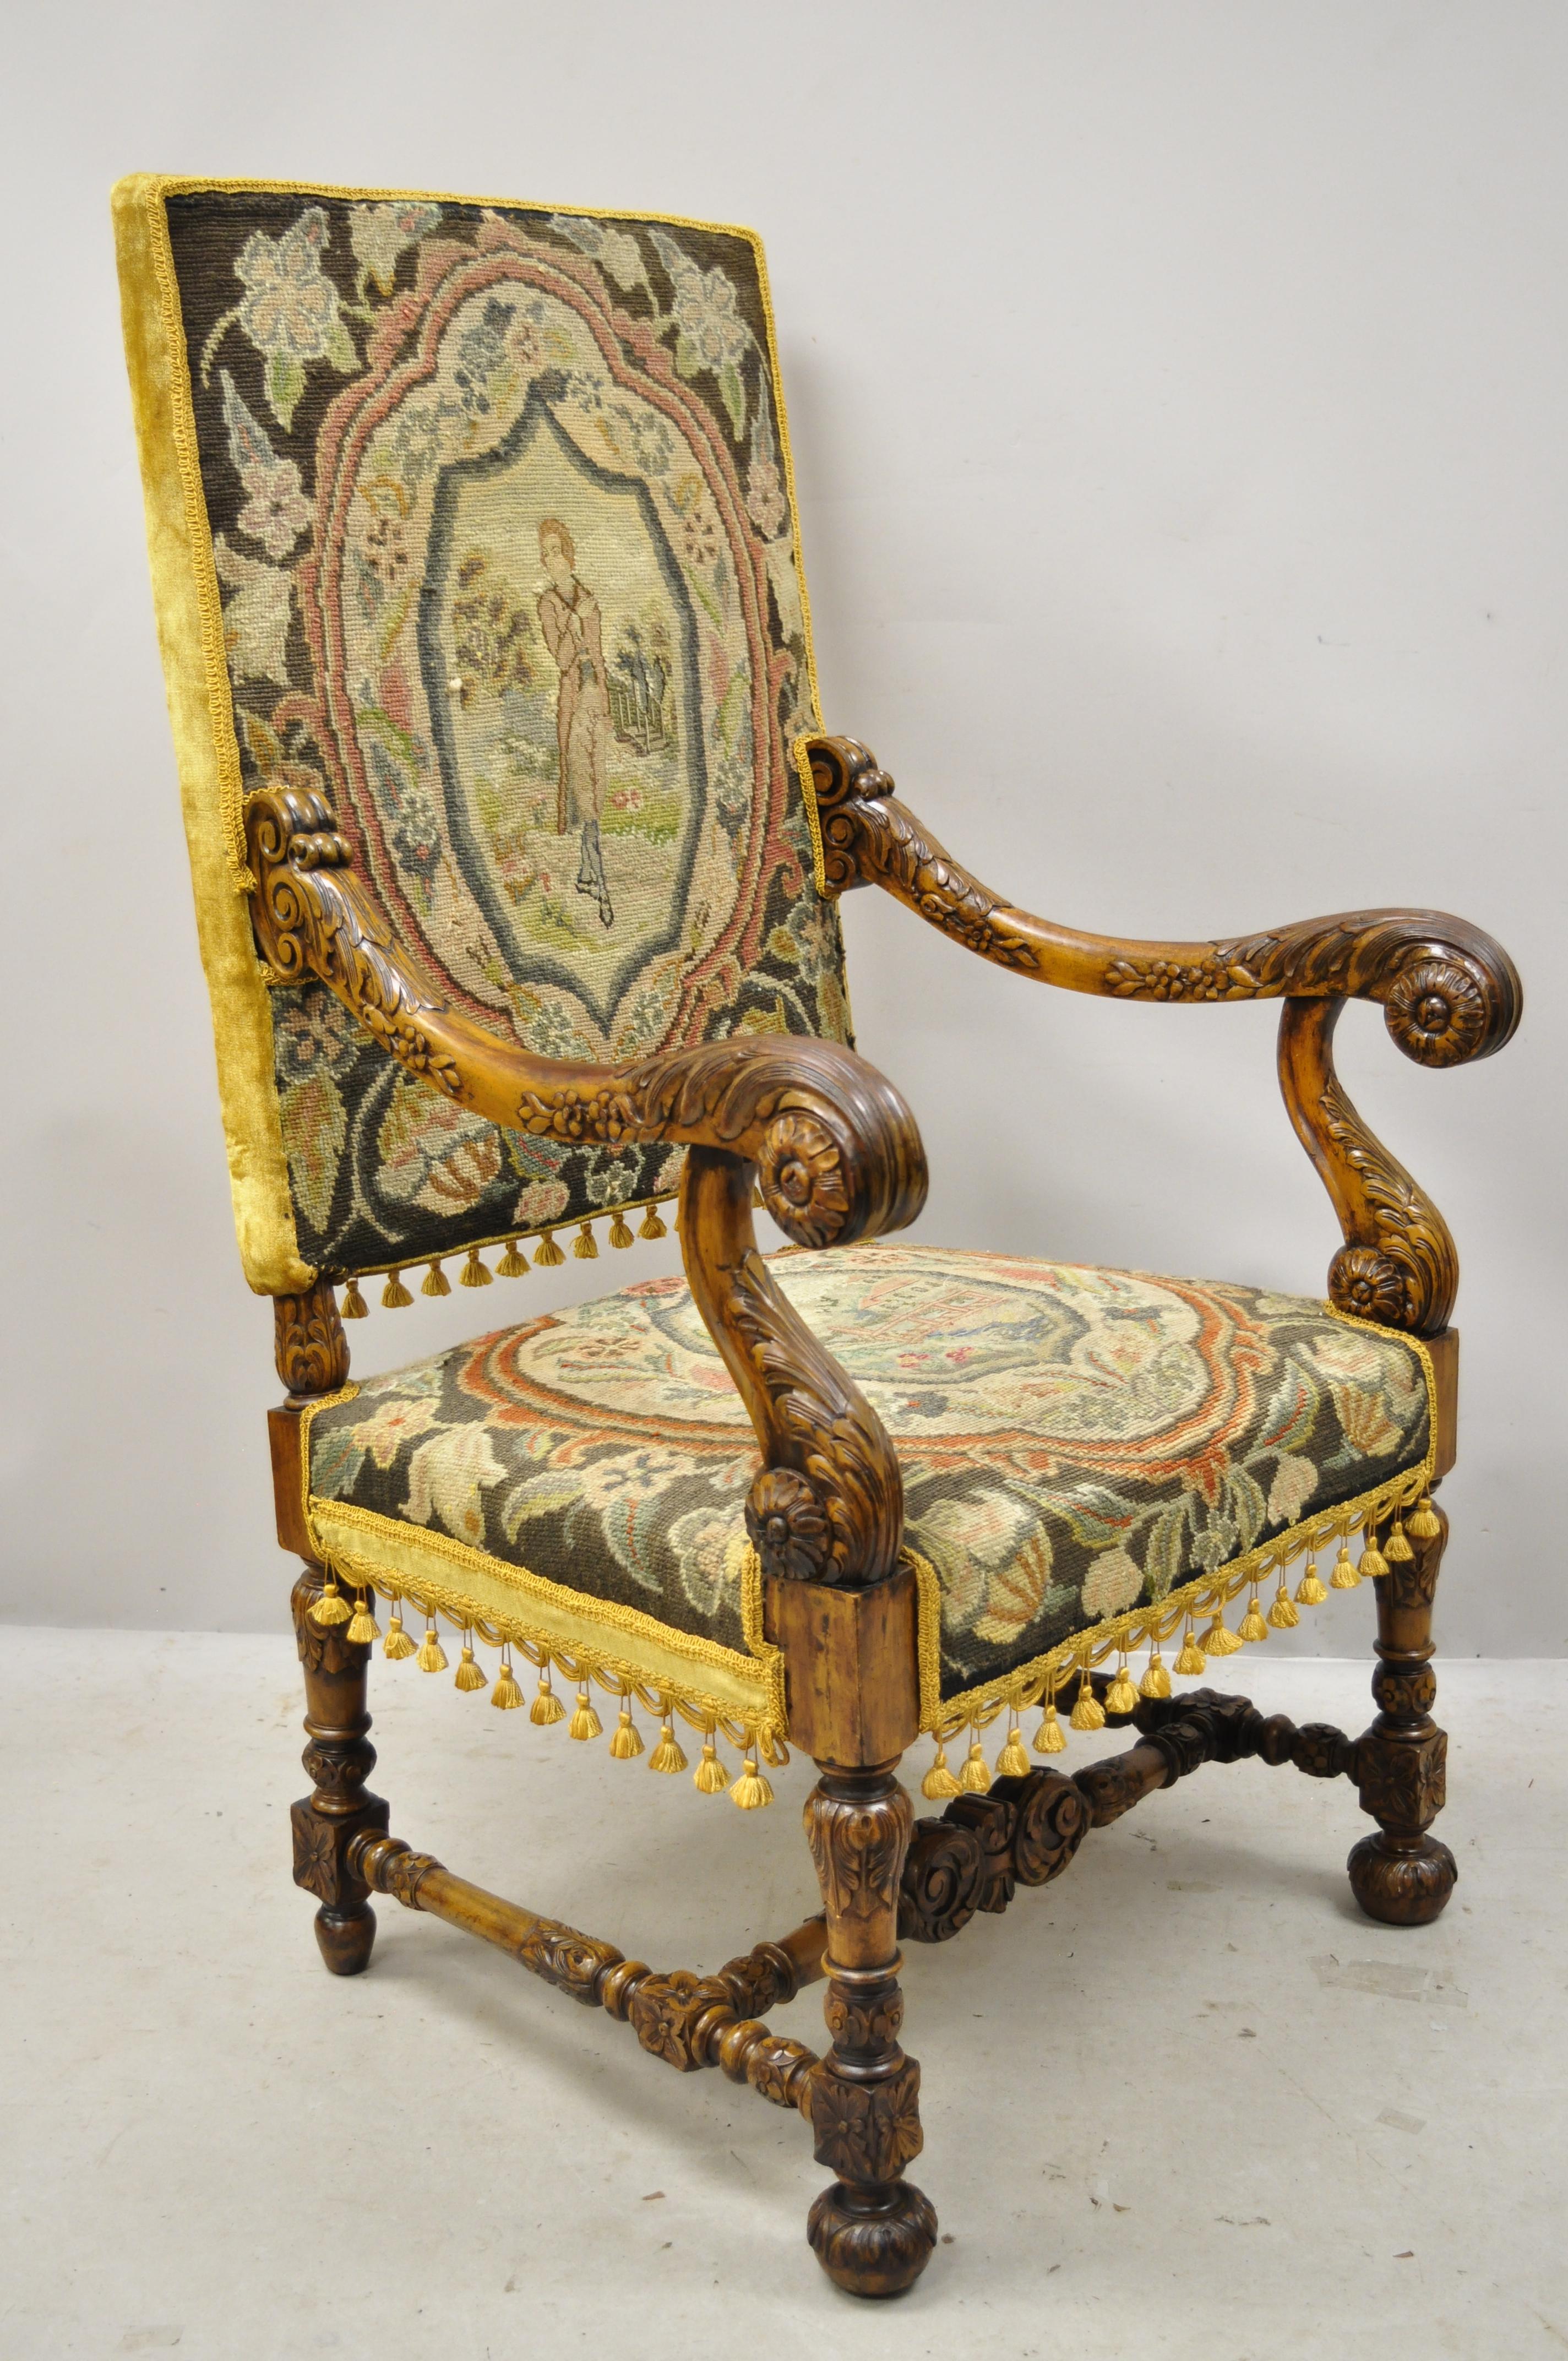 Fauteuil à trône jaune en noyer sculpté à l'aiguille et à l'ancienne Renaissance italienne du 19e siècle. Cet article présente un dossier et une assise en points de broderie, un cadre sculpté de fleurs et de rinceaux, un haut dossier majestueux, une